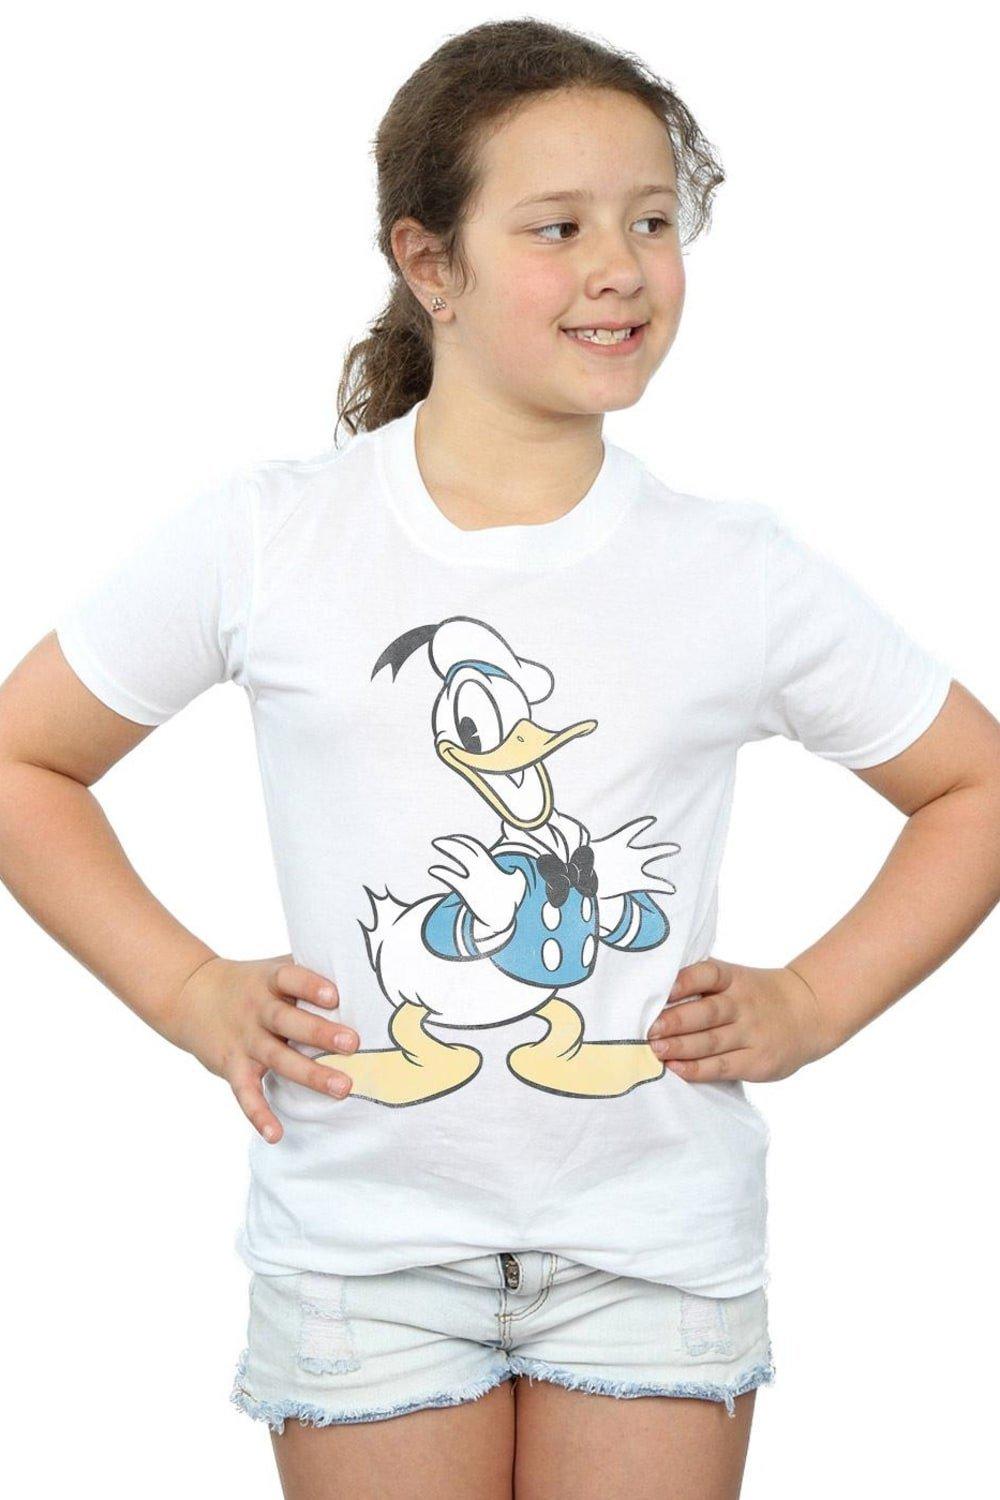 Хлопковая футболка с изображением Дональда Дака Disney, белый картина из страз с изображением дональда дака диснея вышивка картина с животными украшение для дома рождественские подарки для детей